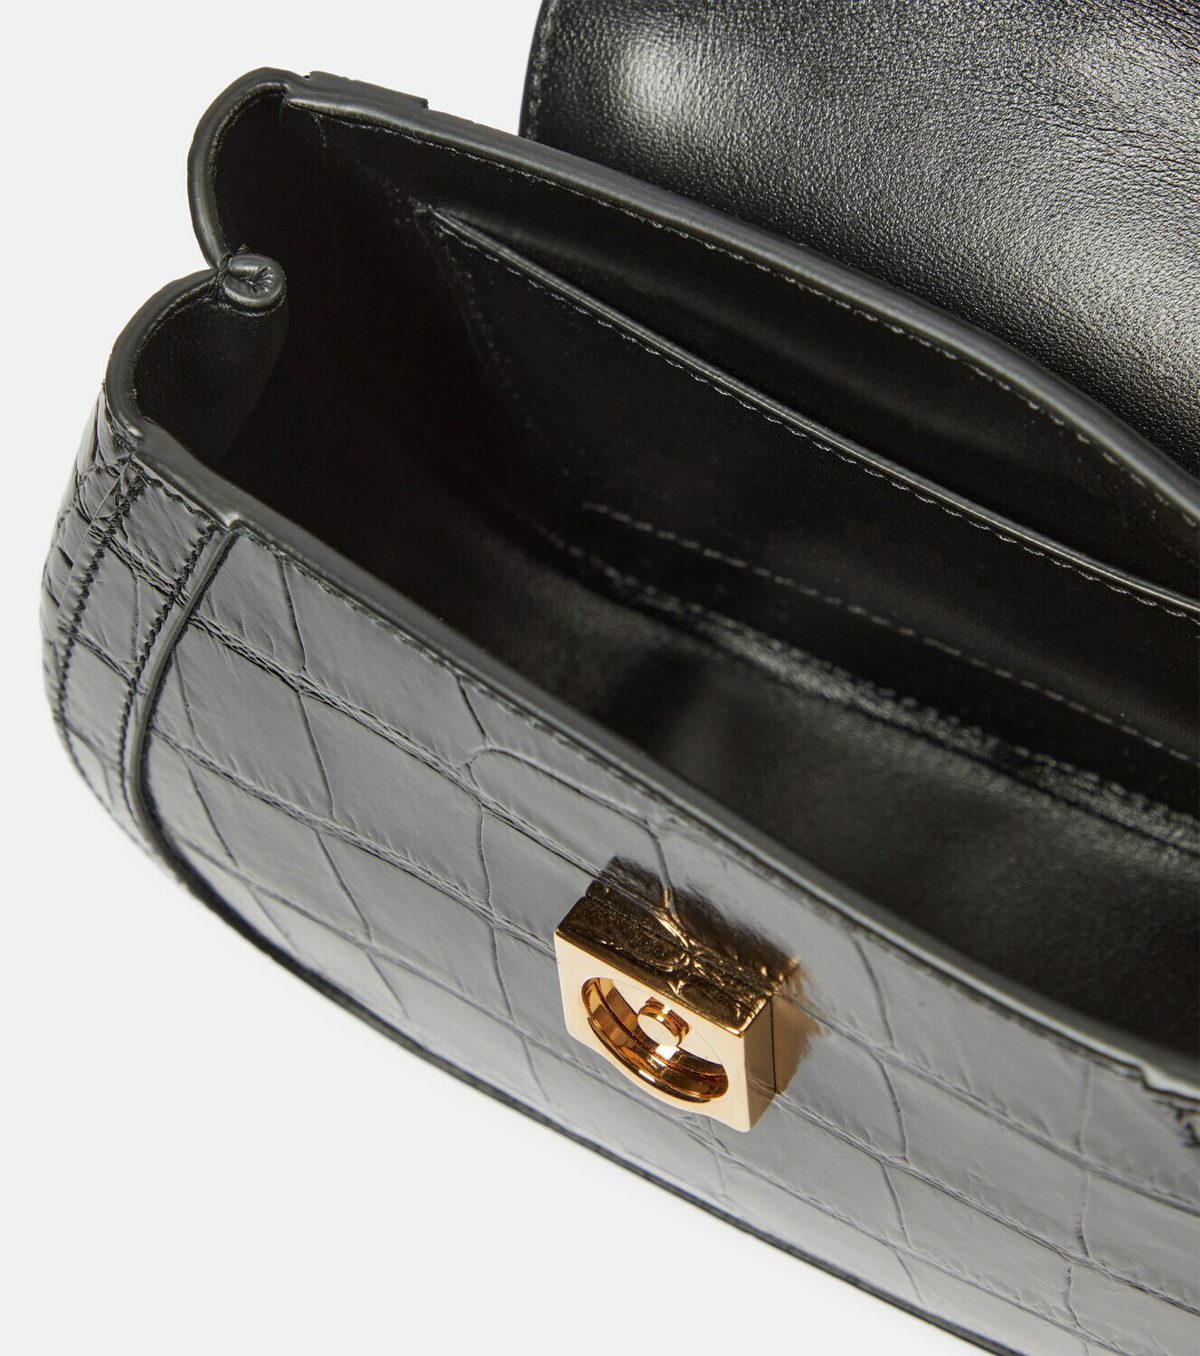 Greca Goddess Mini leather tote bag in black - Versace